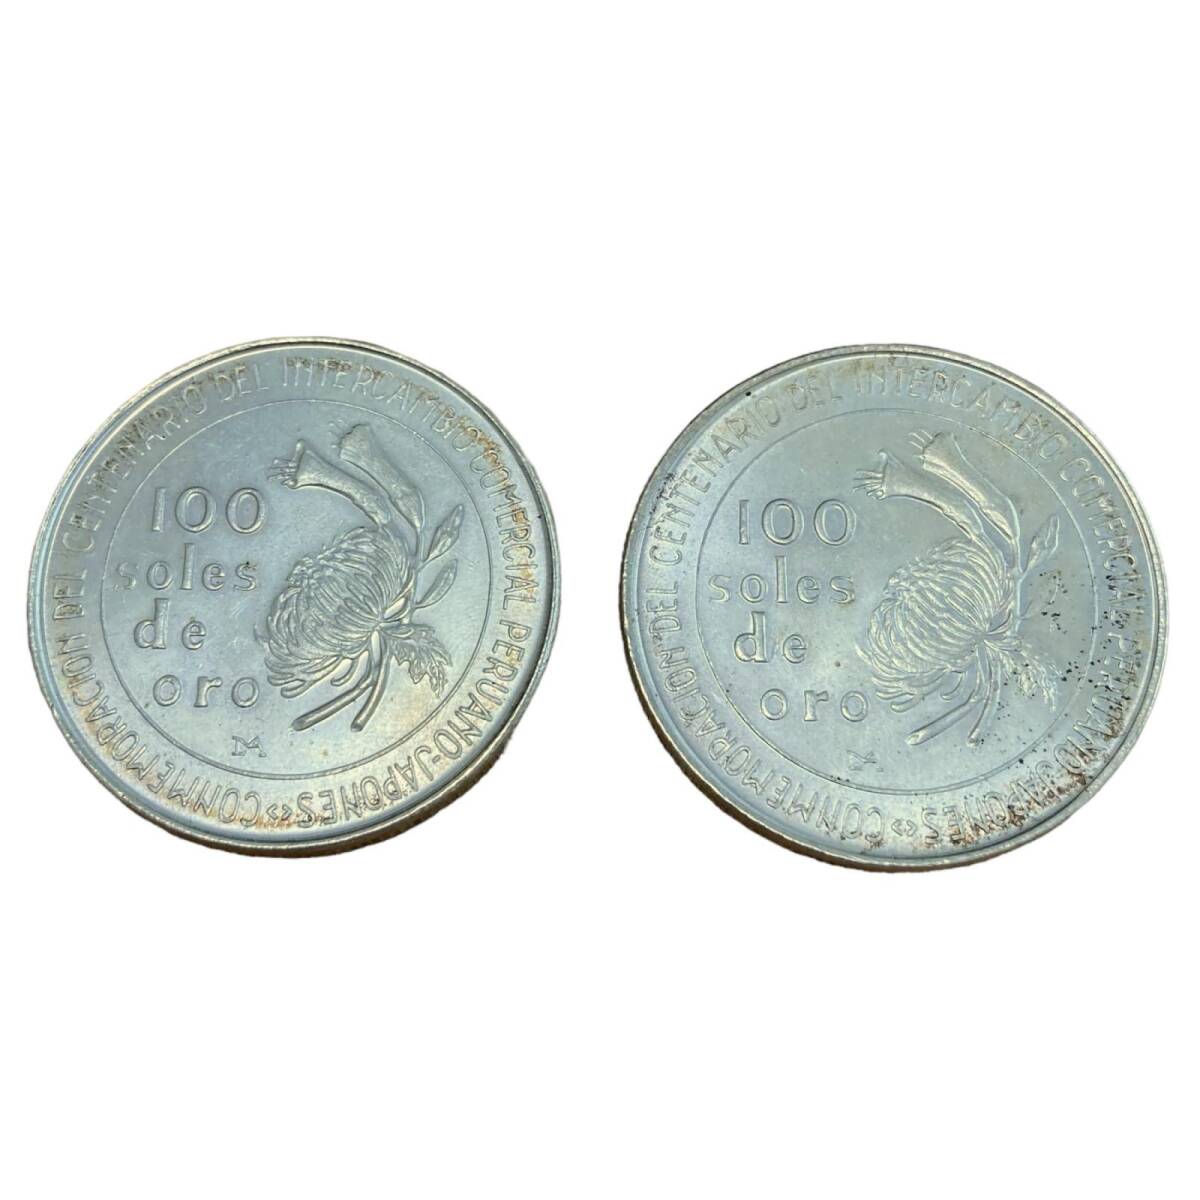 日本ペルー修好100周年記念銀貨 100ソル ペルー銀貨 1873-1973 【2枚】 コイン_画像2